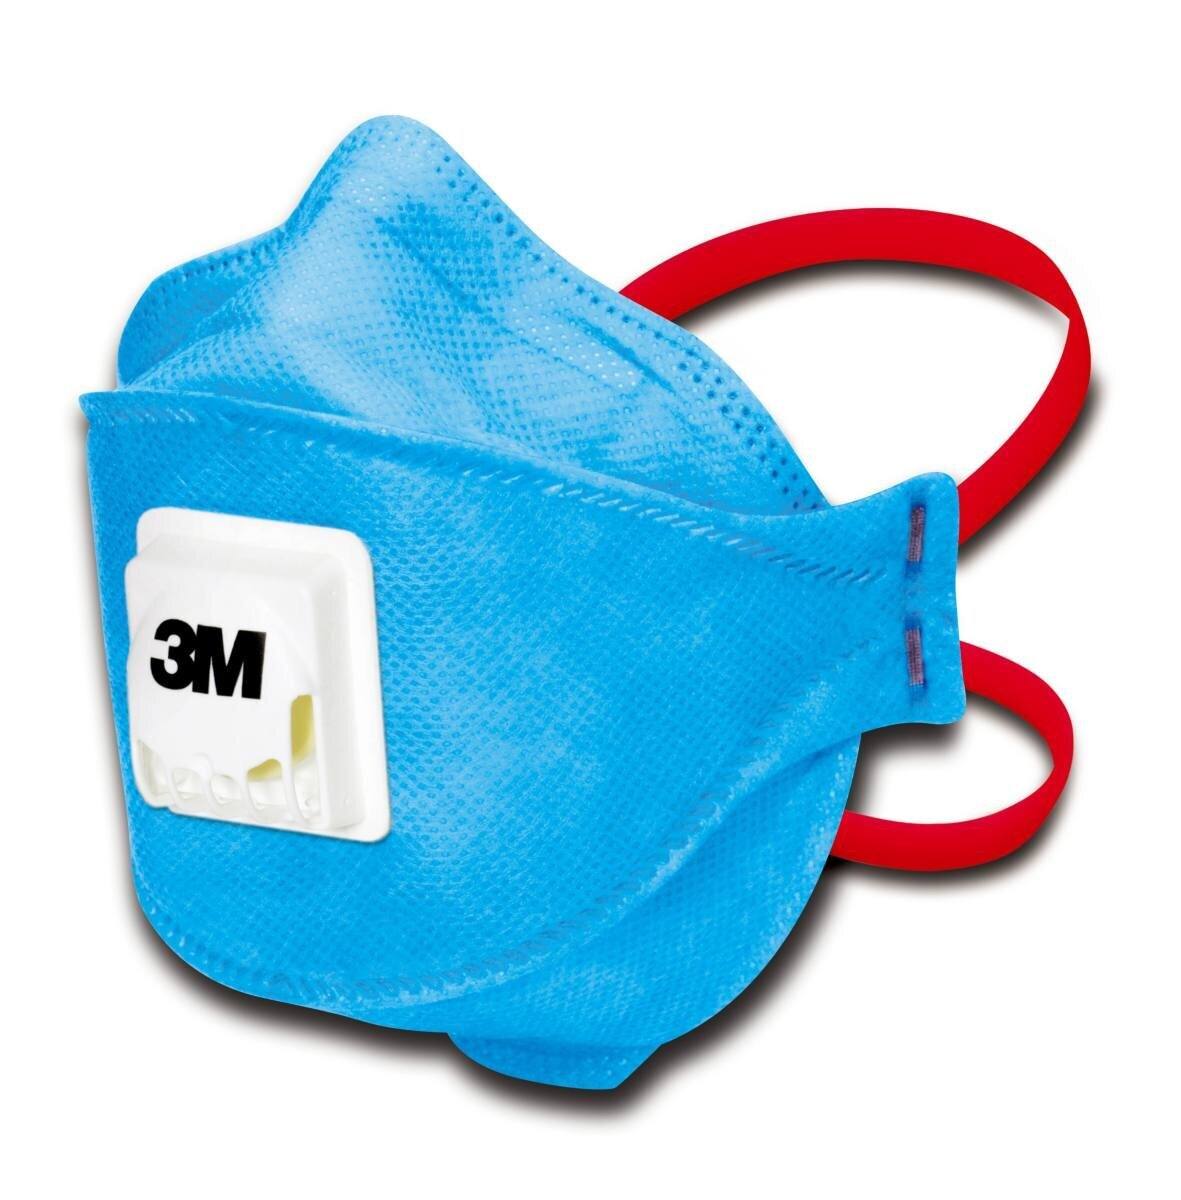 3M 9432+ Aura Atemschutzmaske FFP3 mit Cool-Flow Ausatemventil, bis zum 30-fachen des Grenzwertes (hygienisch einzelverpackt)